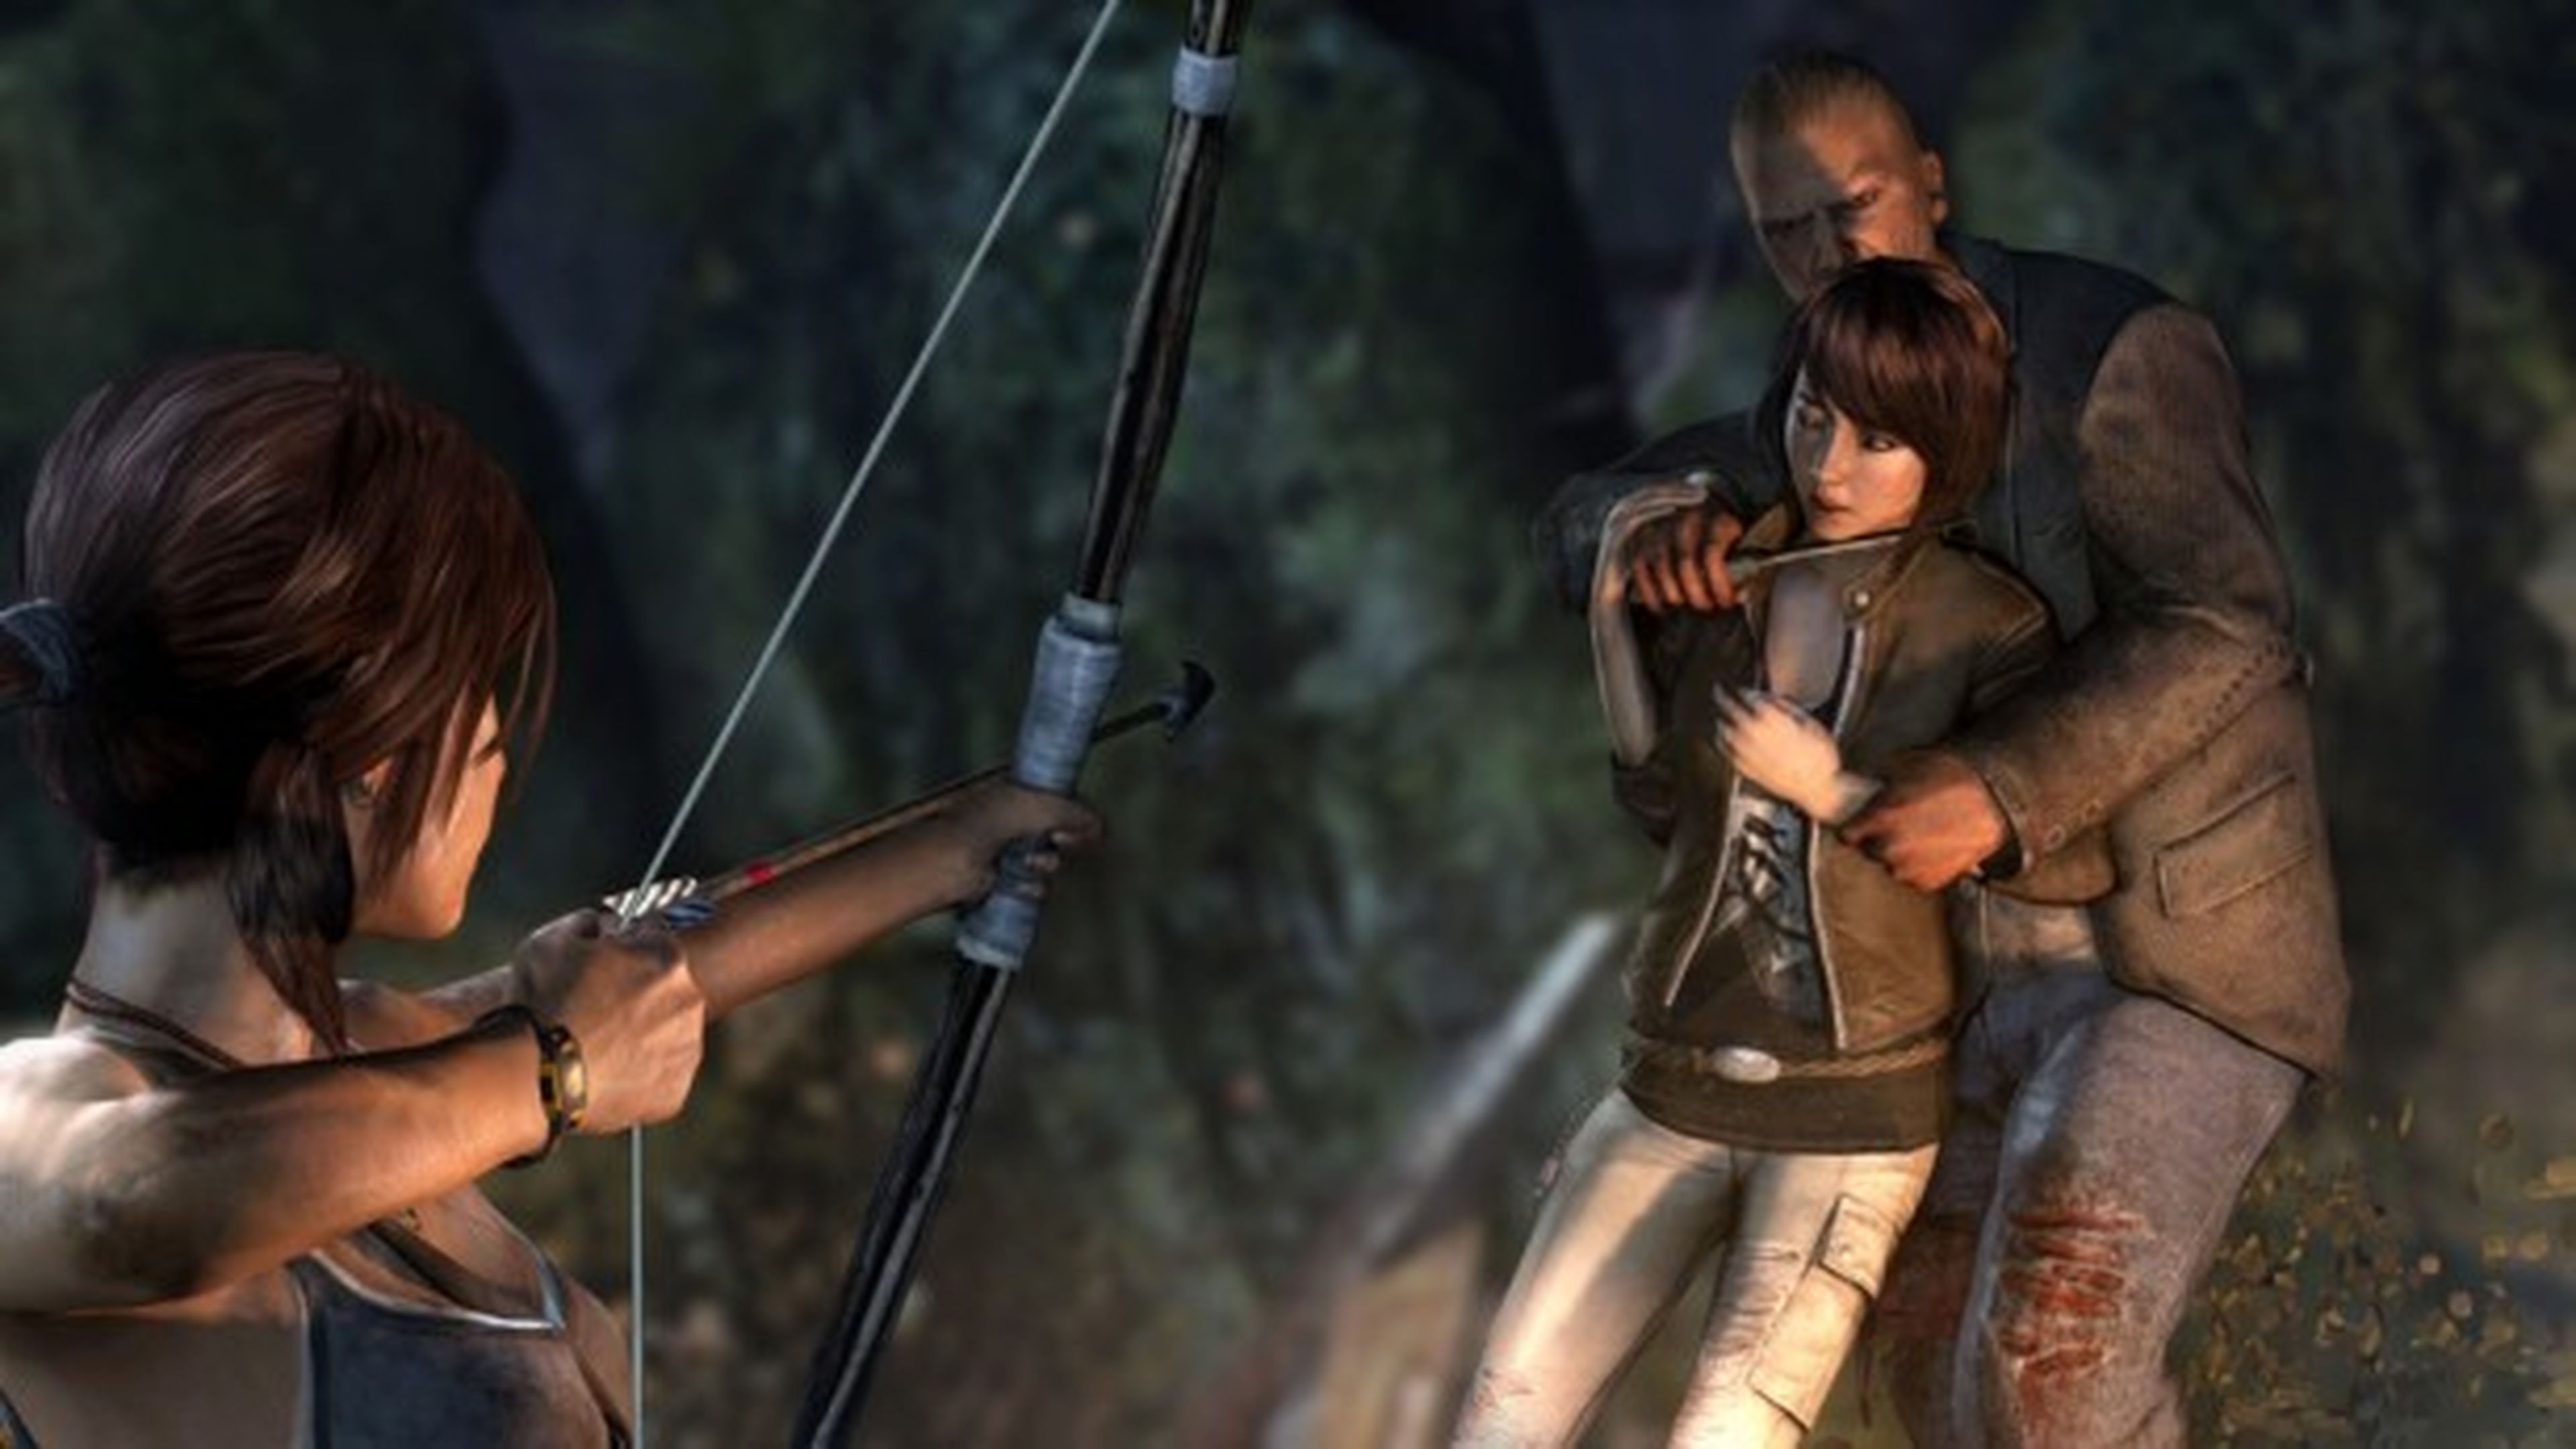 No habrá demo jugable de Tomb Raider